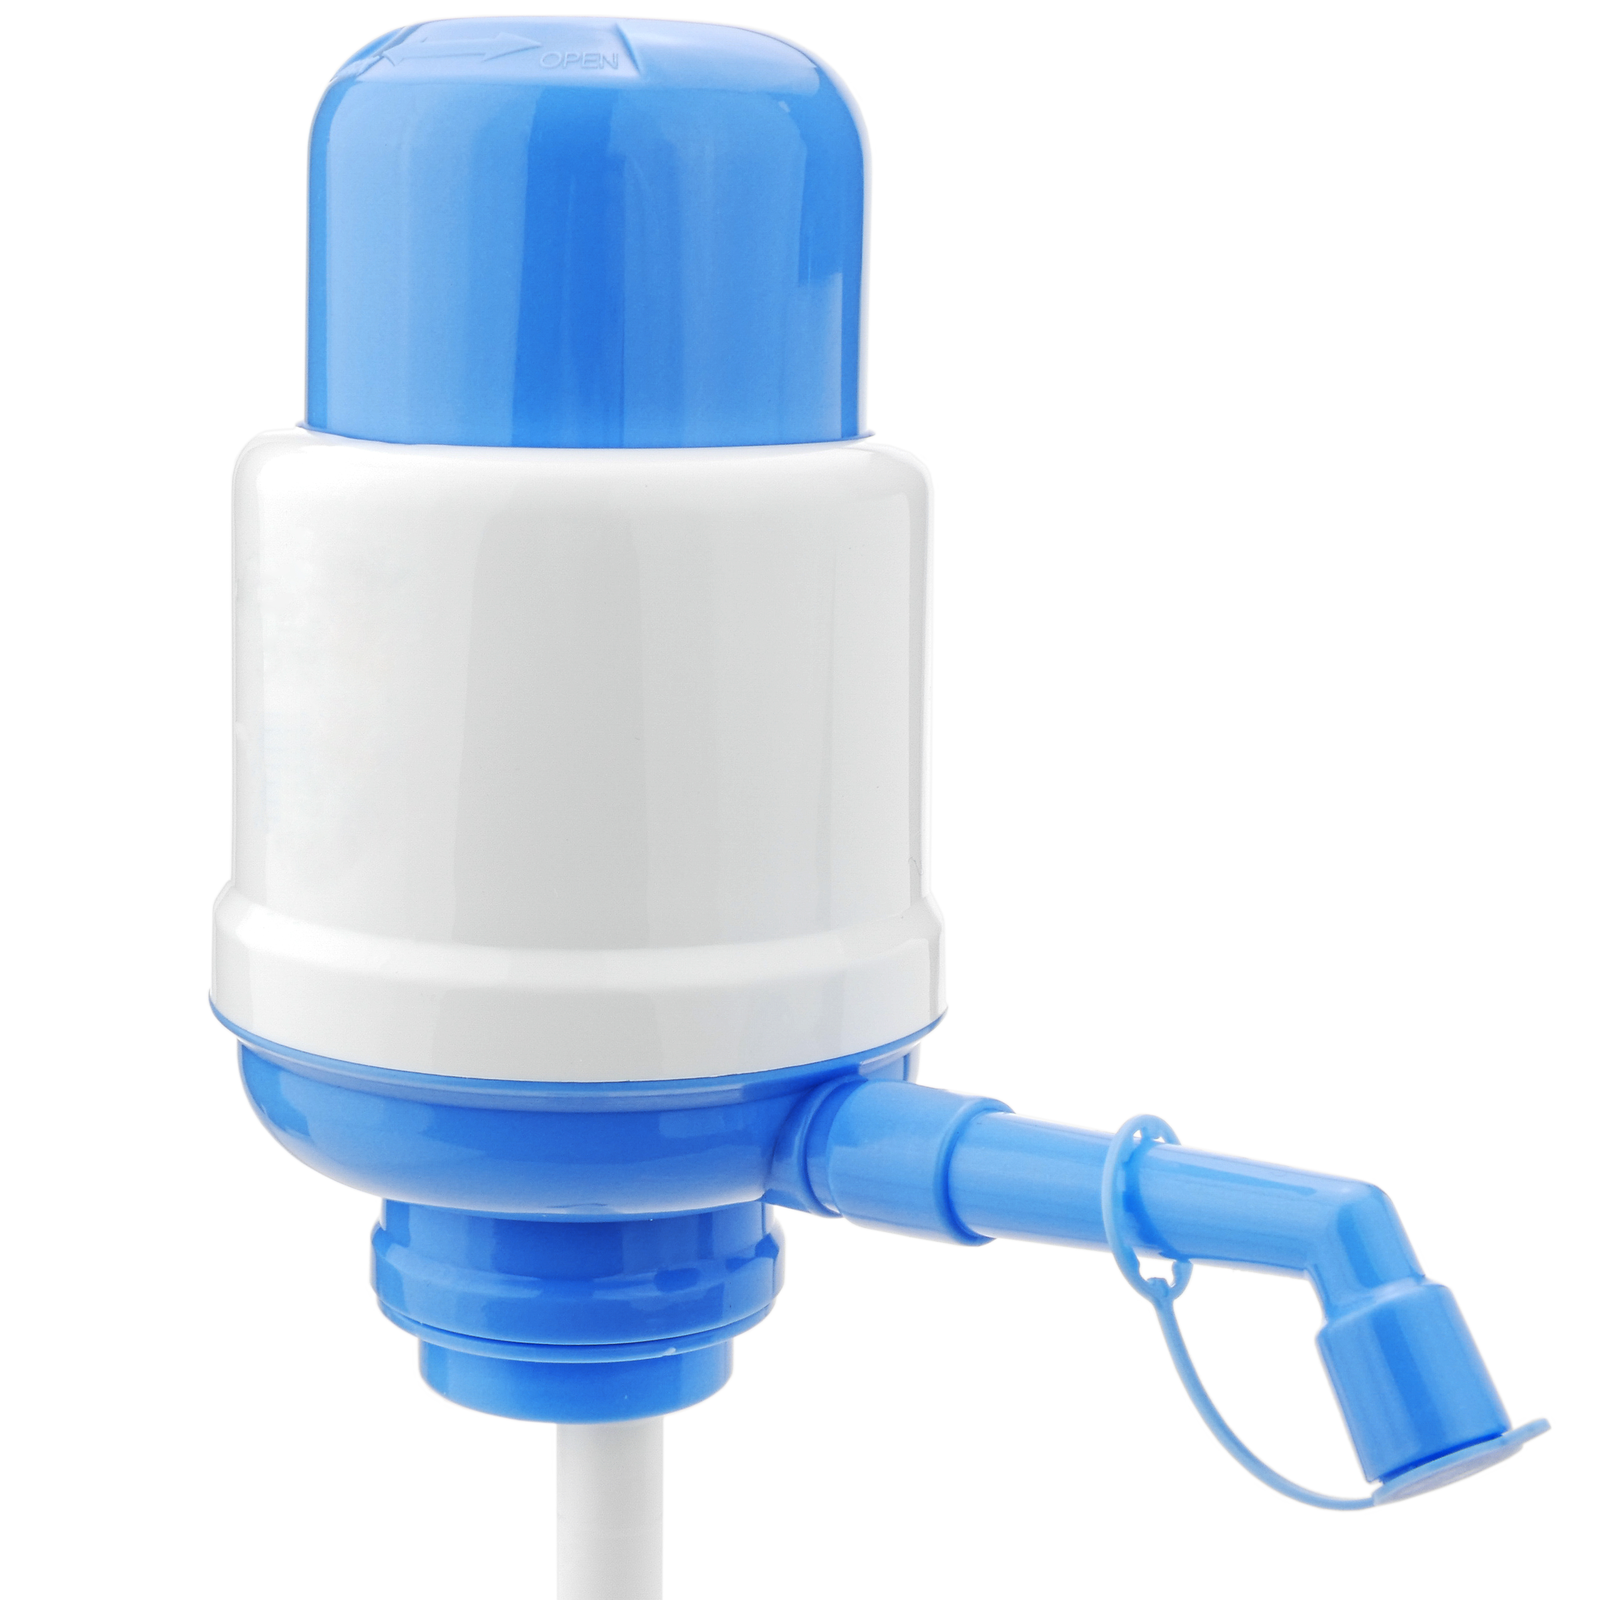 Kaufe Tragbare Wasser-Handpumpe, abgefülltes Trinkwasser, Handpresse,  Druckpumpenspender, das Wasserdruckgerät